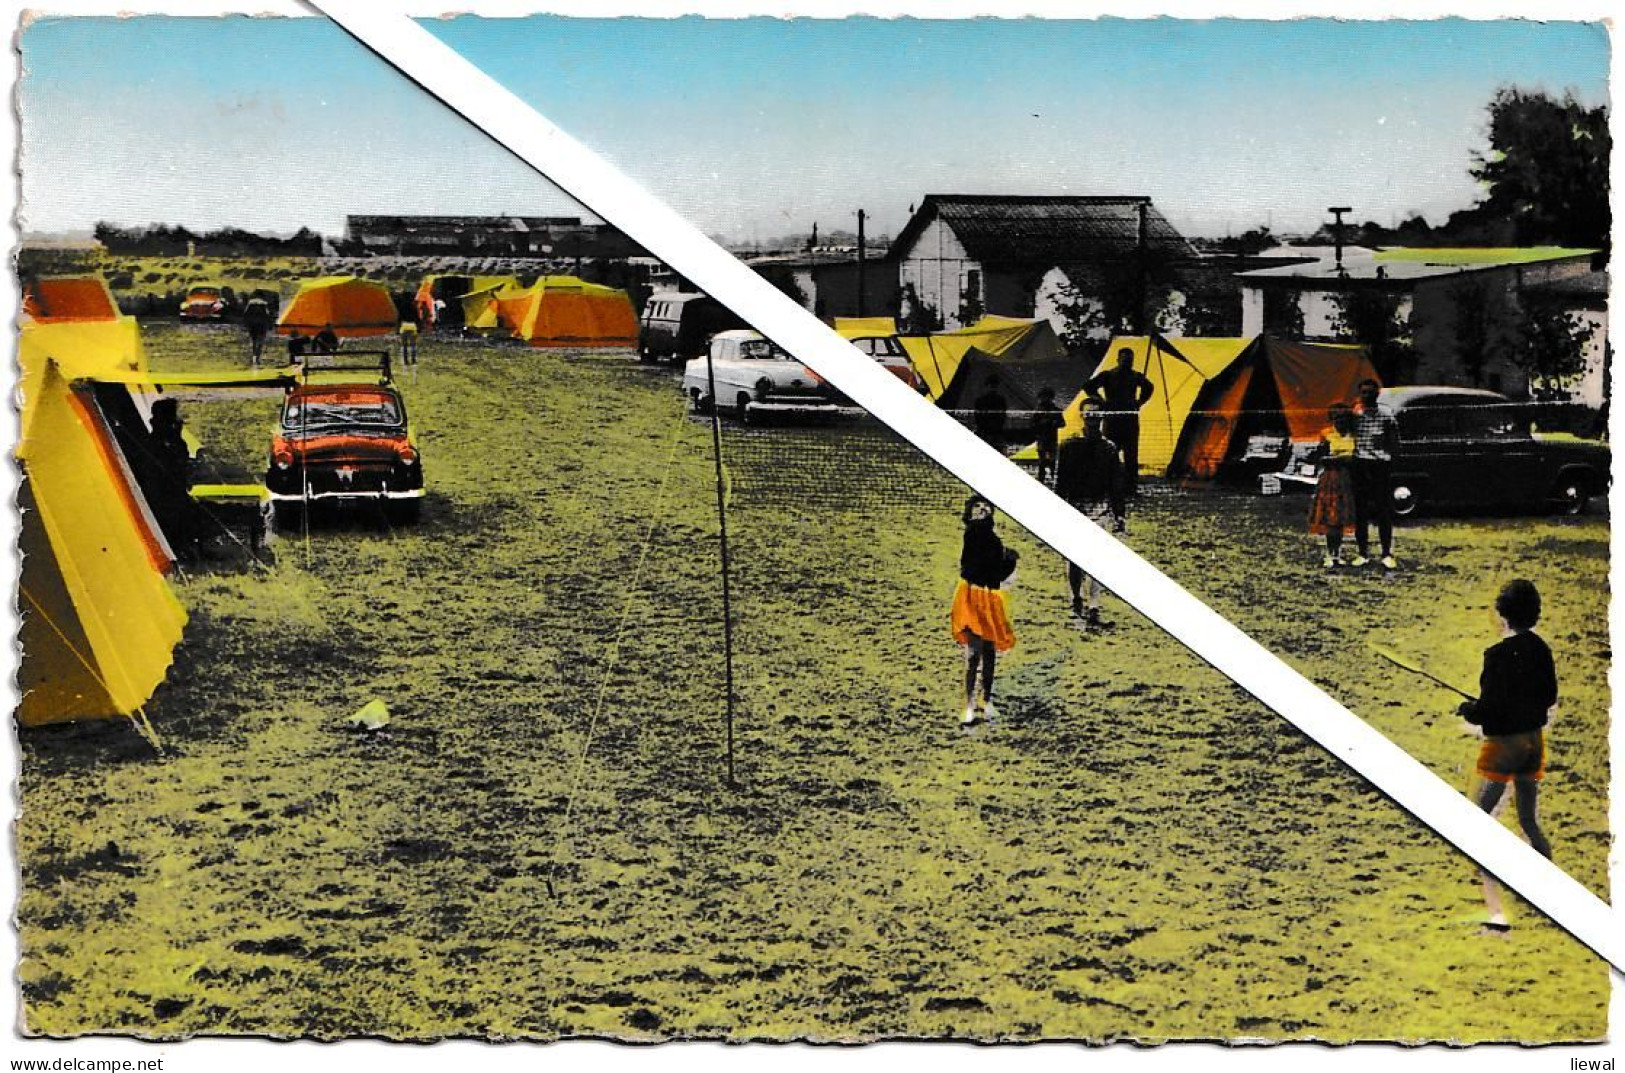 Vlissegem 1961. Camping 'Ten Bos' - De Haan